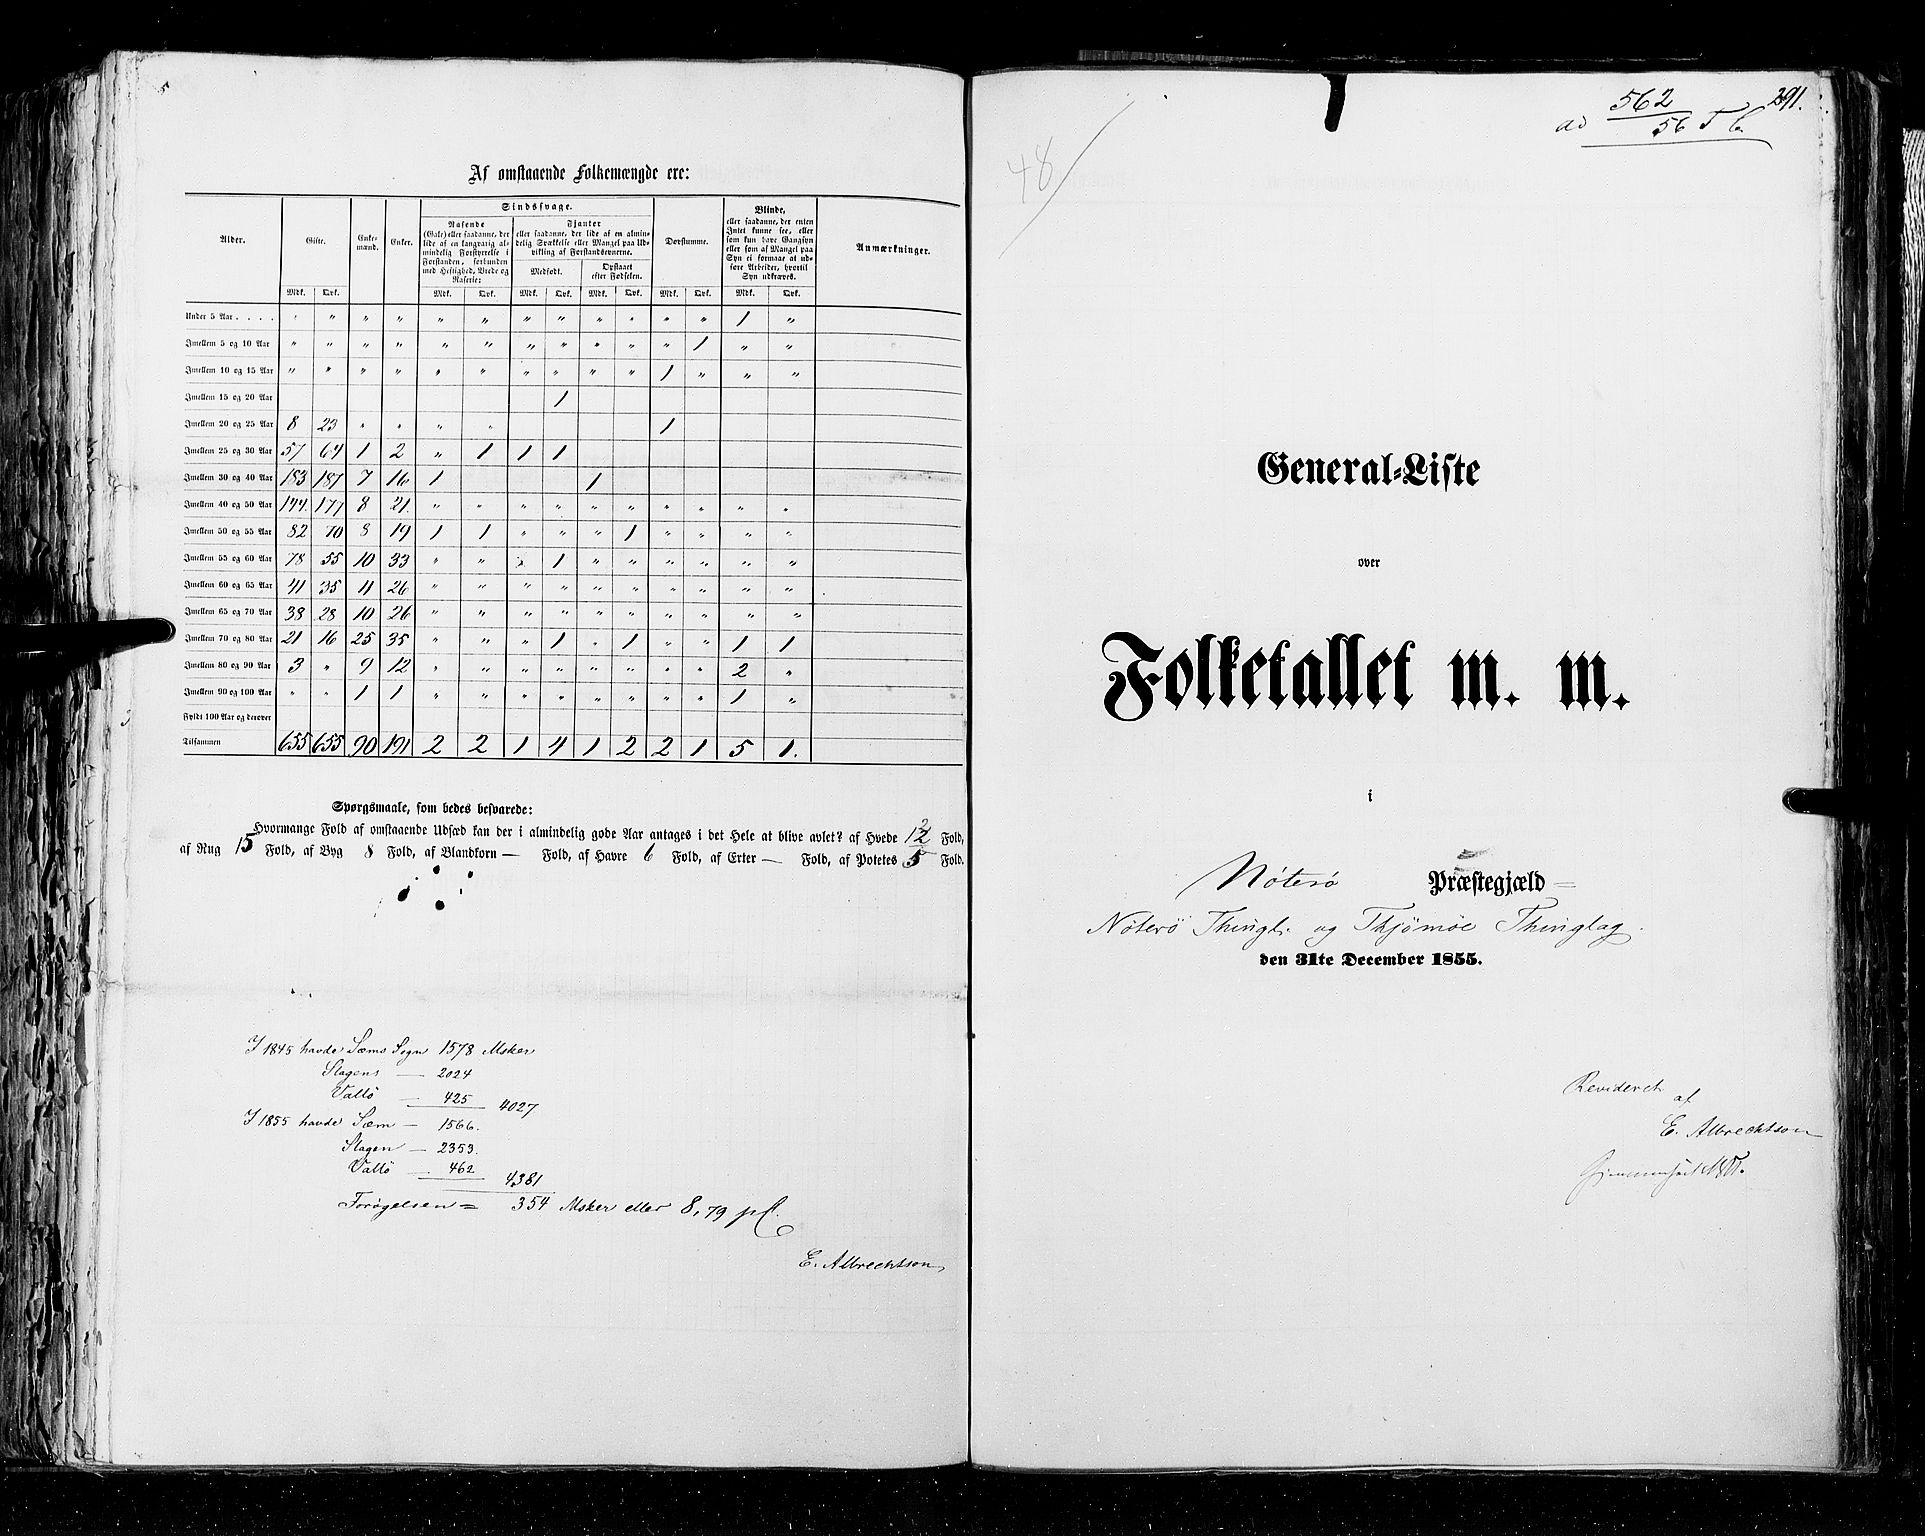 RA, Folketellingen 1855, bind 2: Kristians amt, Buskerud amt og Jarlsberg og Larvik amt, 1855, s. 291